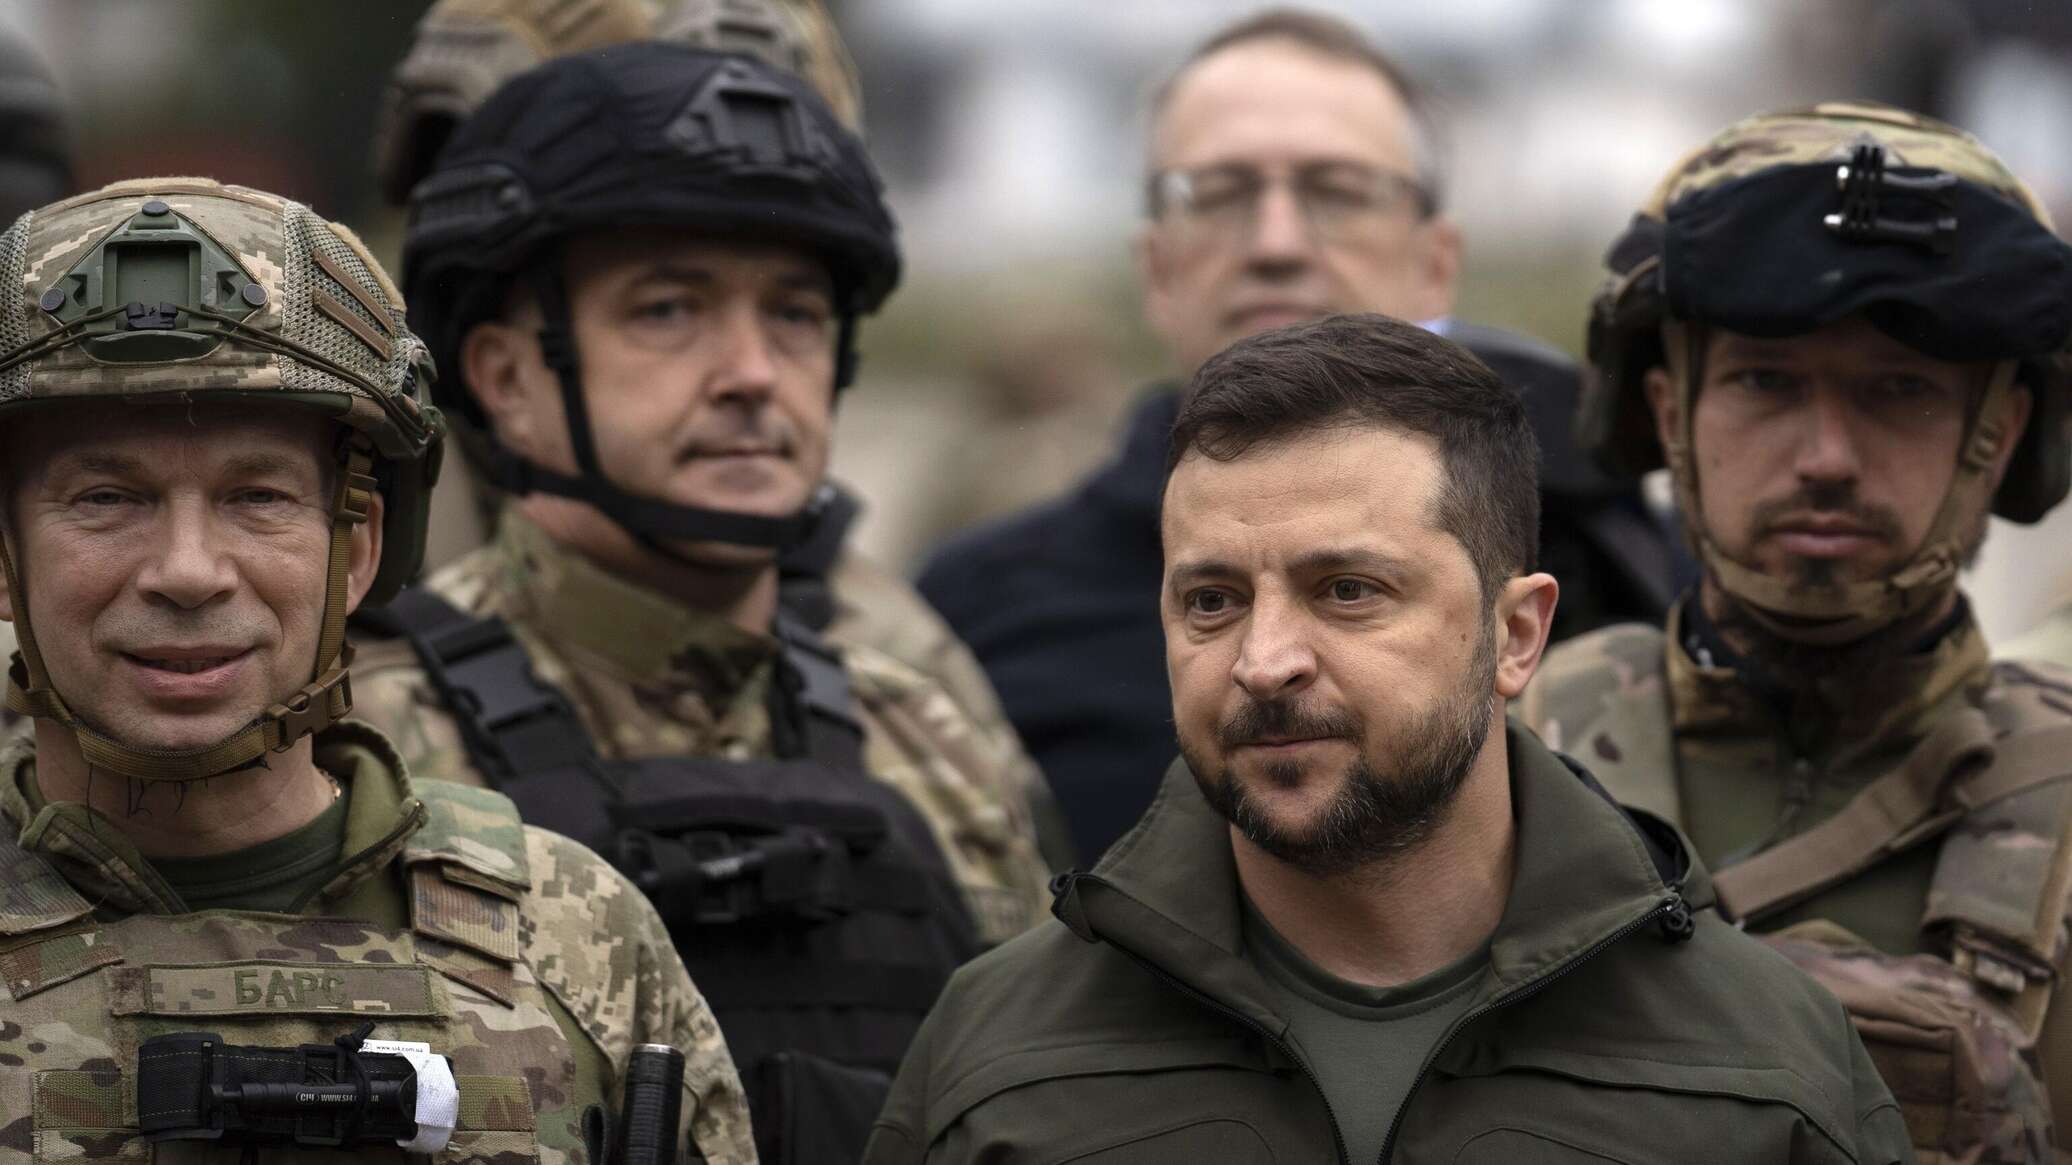 ضابط مخابرات أمريكي سابق: قدرة أوكرانيا على الصمود في الصراع تتدهور بشكل مطرد